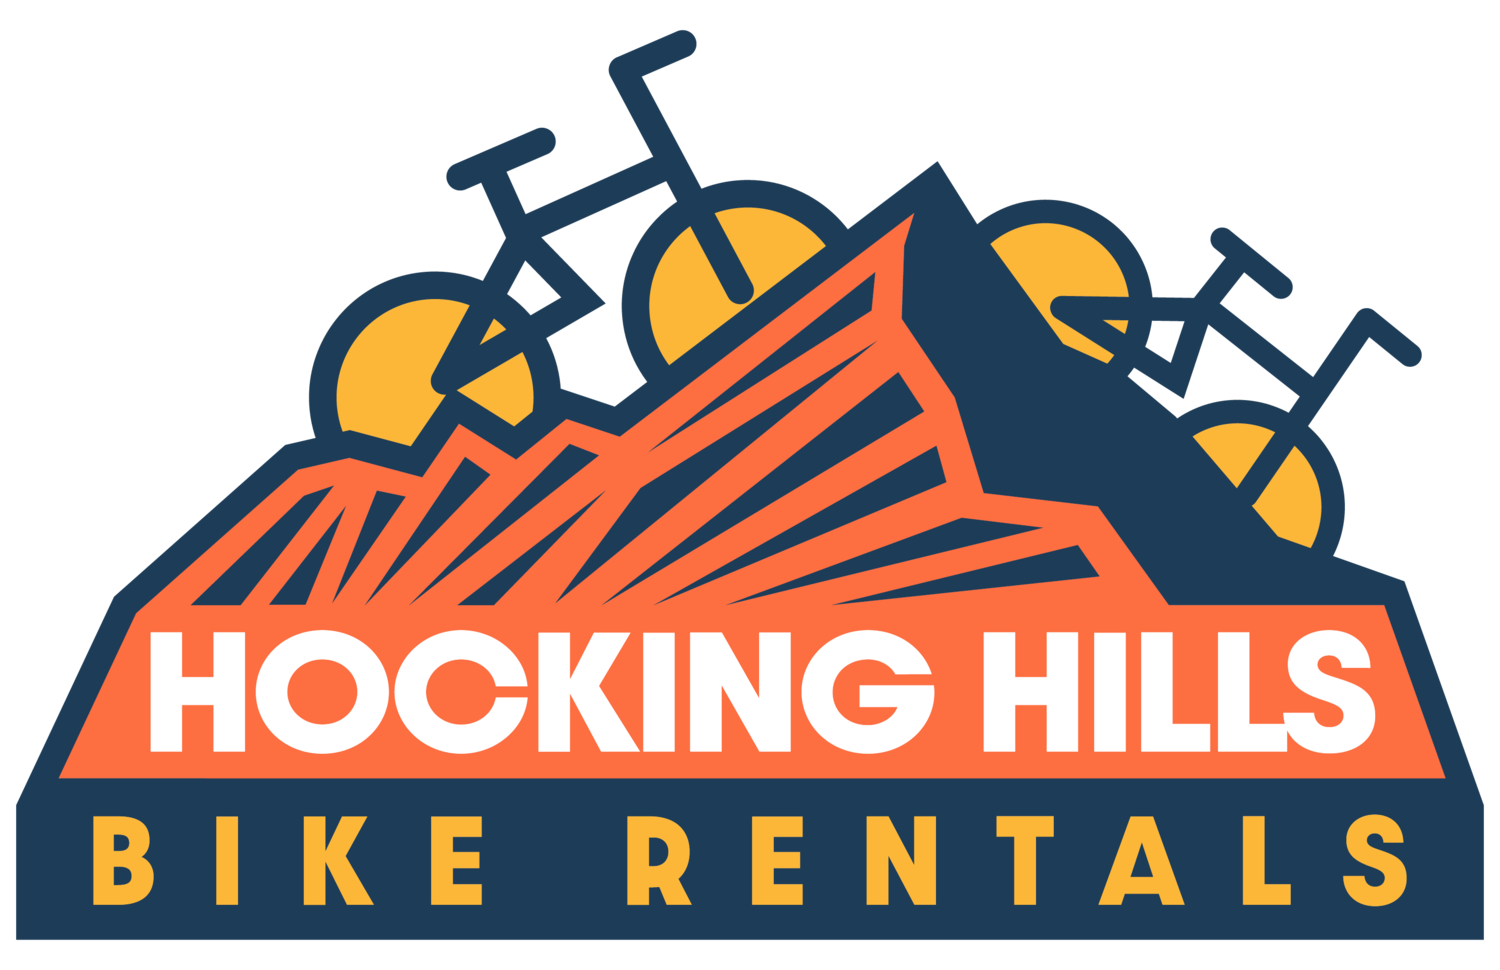 Hocking Hills Bike Rentals